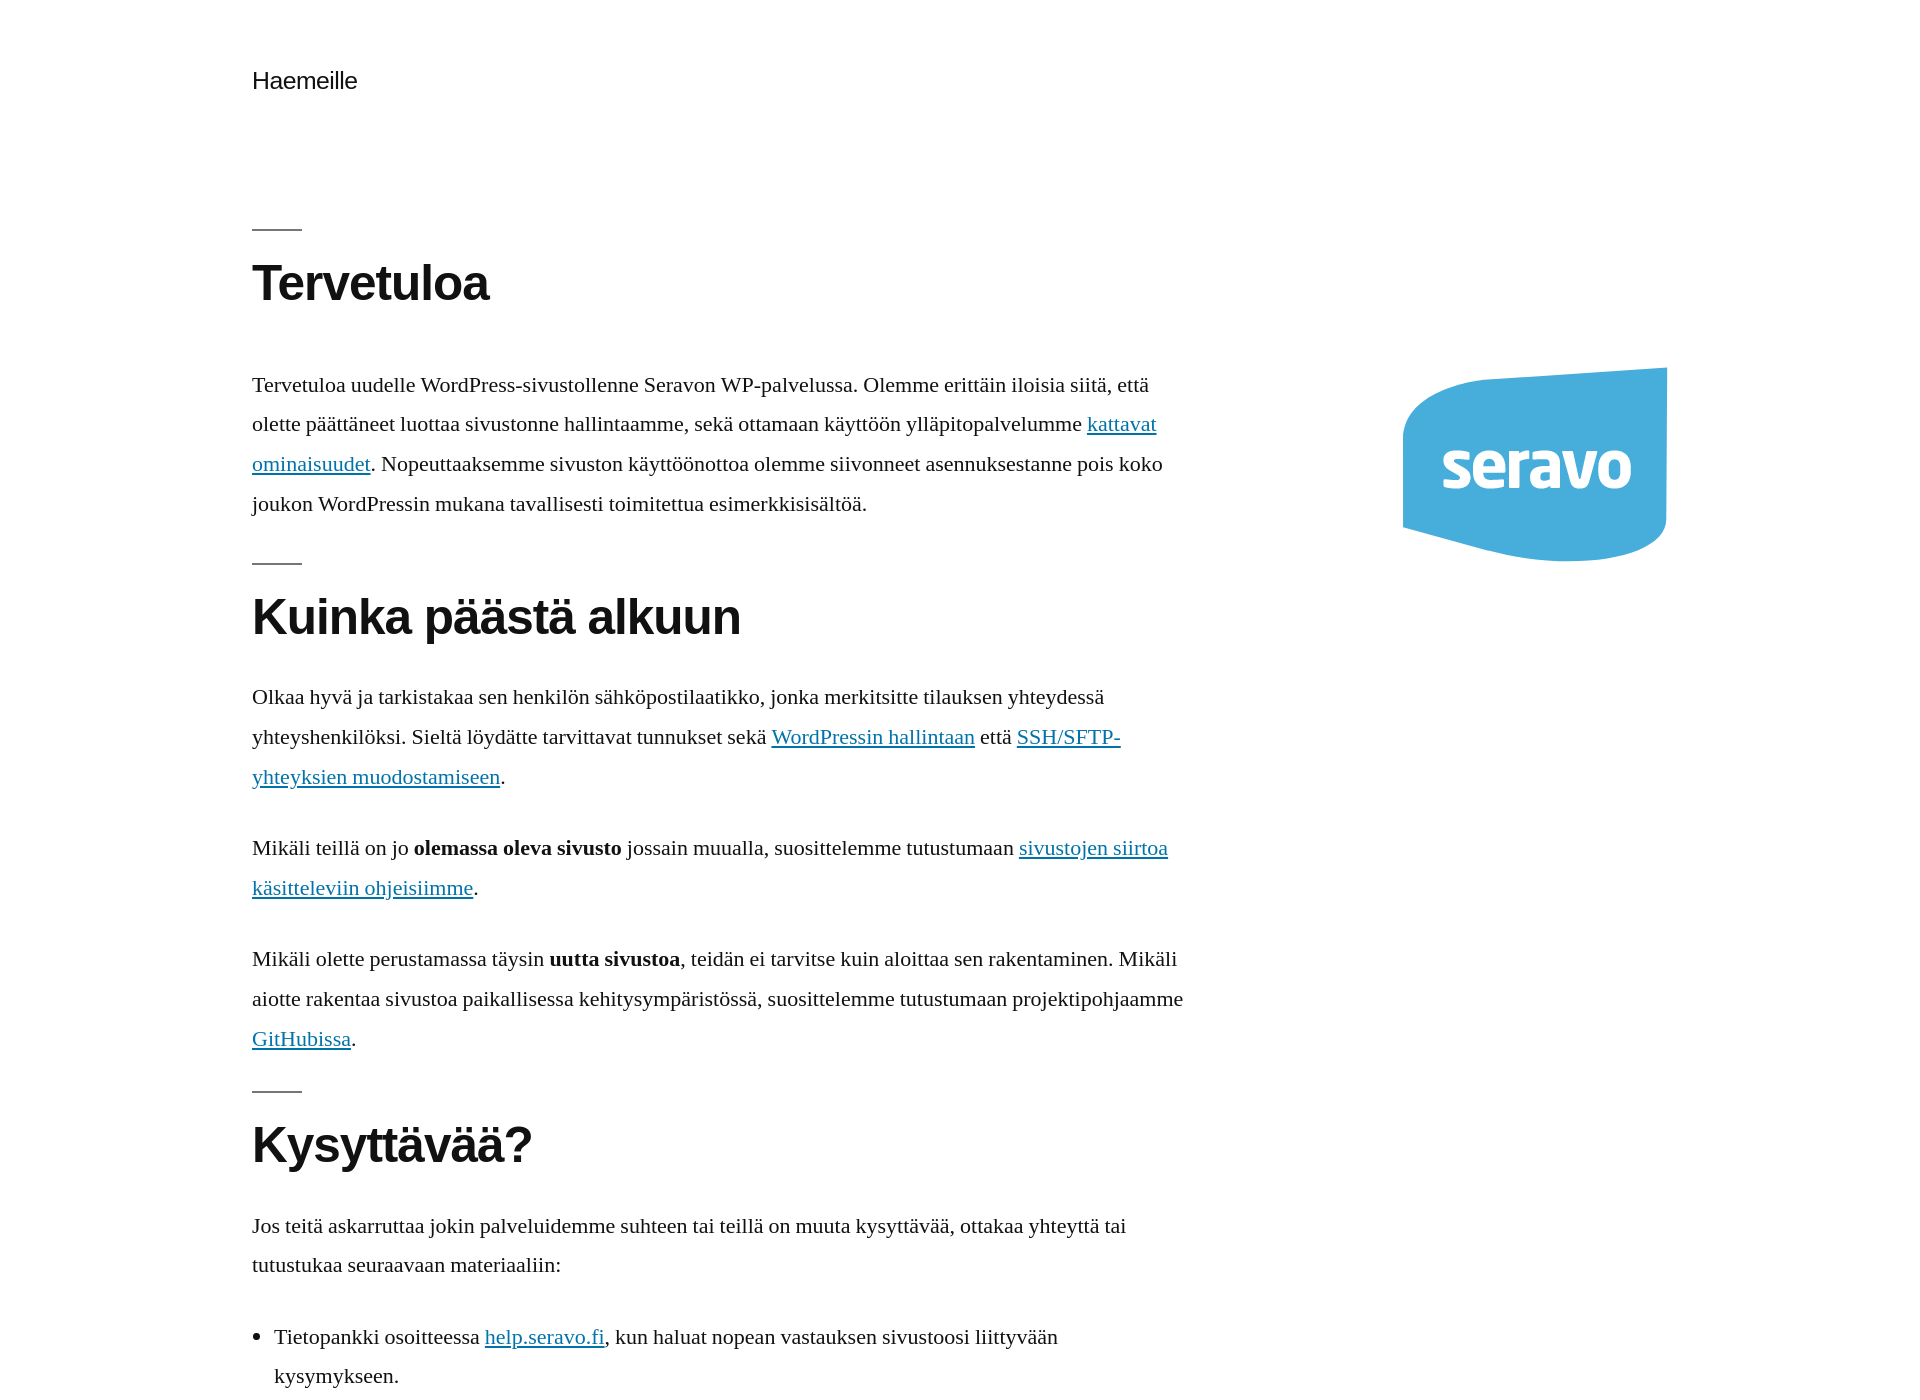 Näyttökuva haemeille.fi